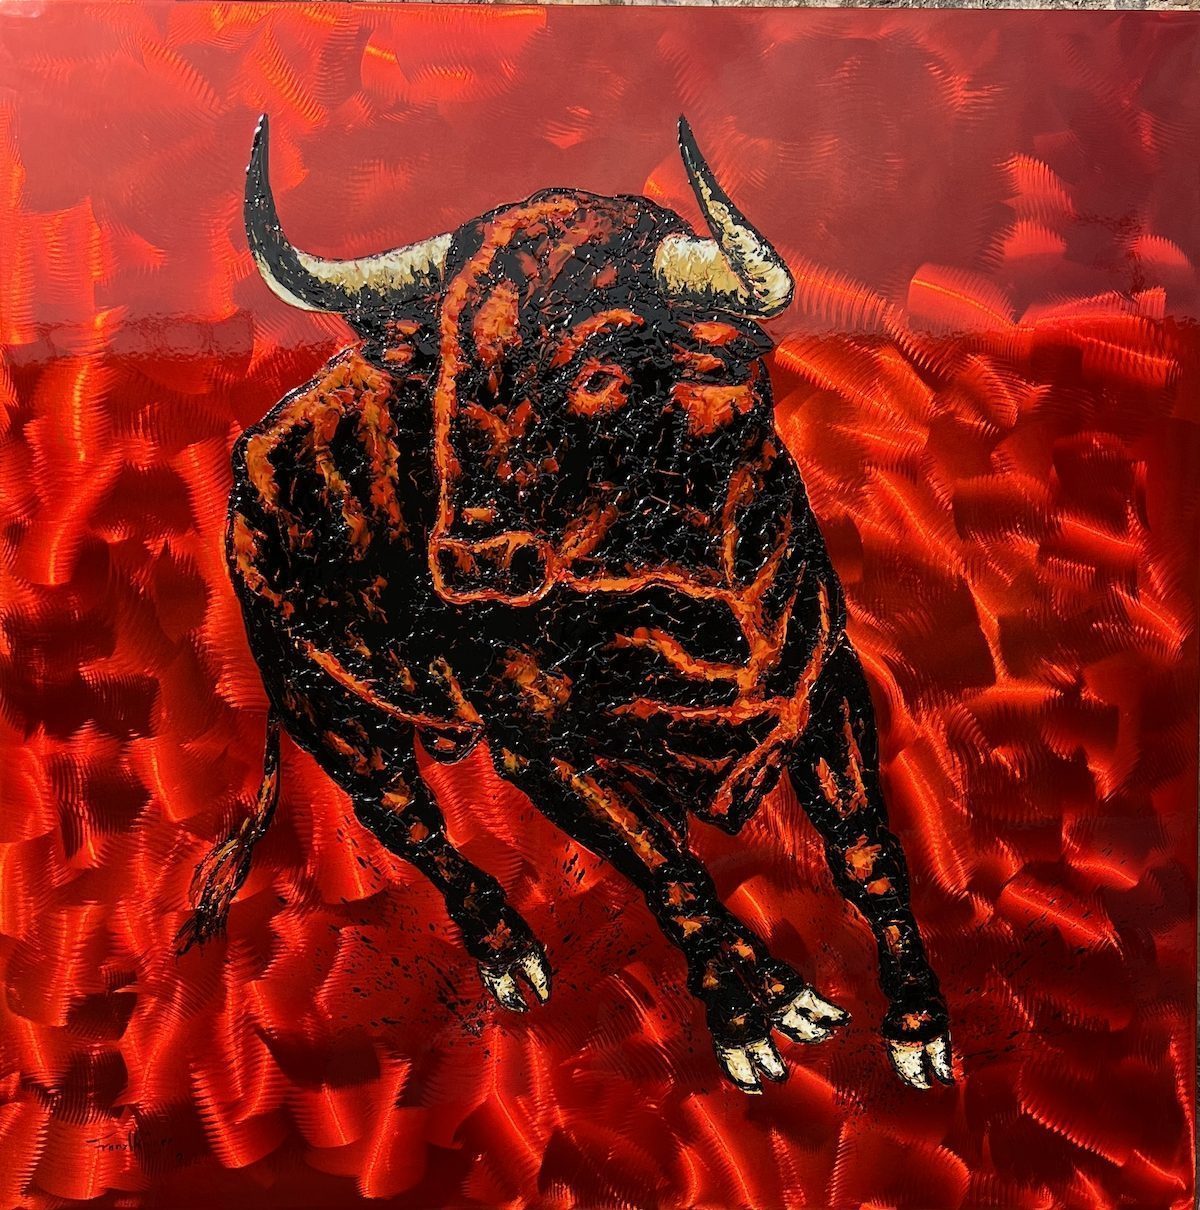 Bull of lava